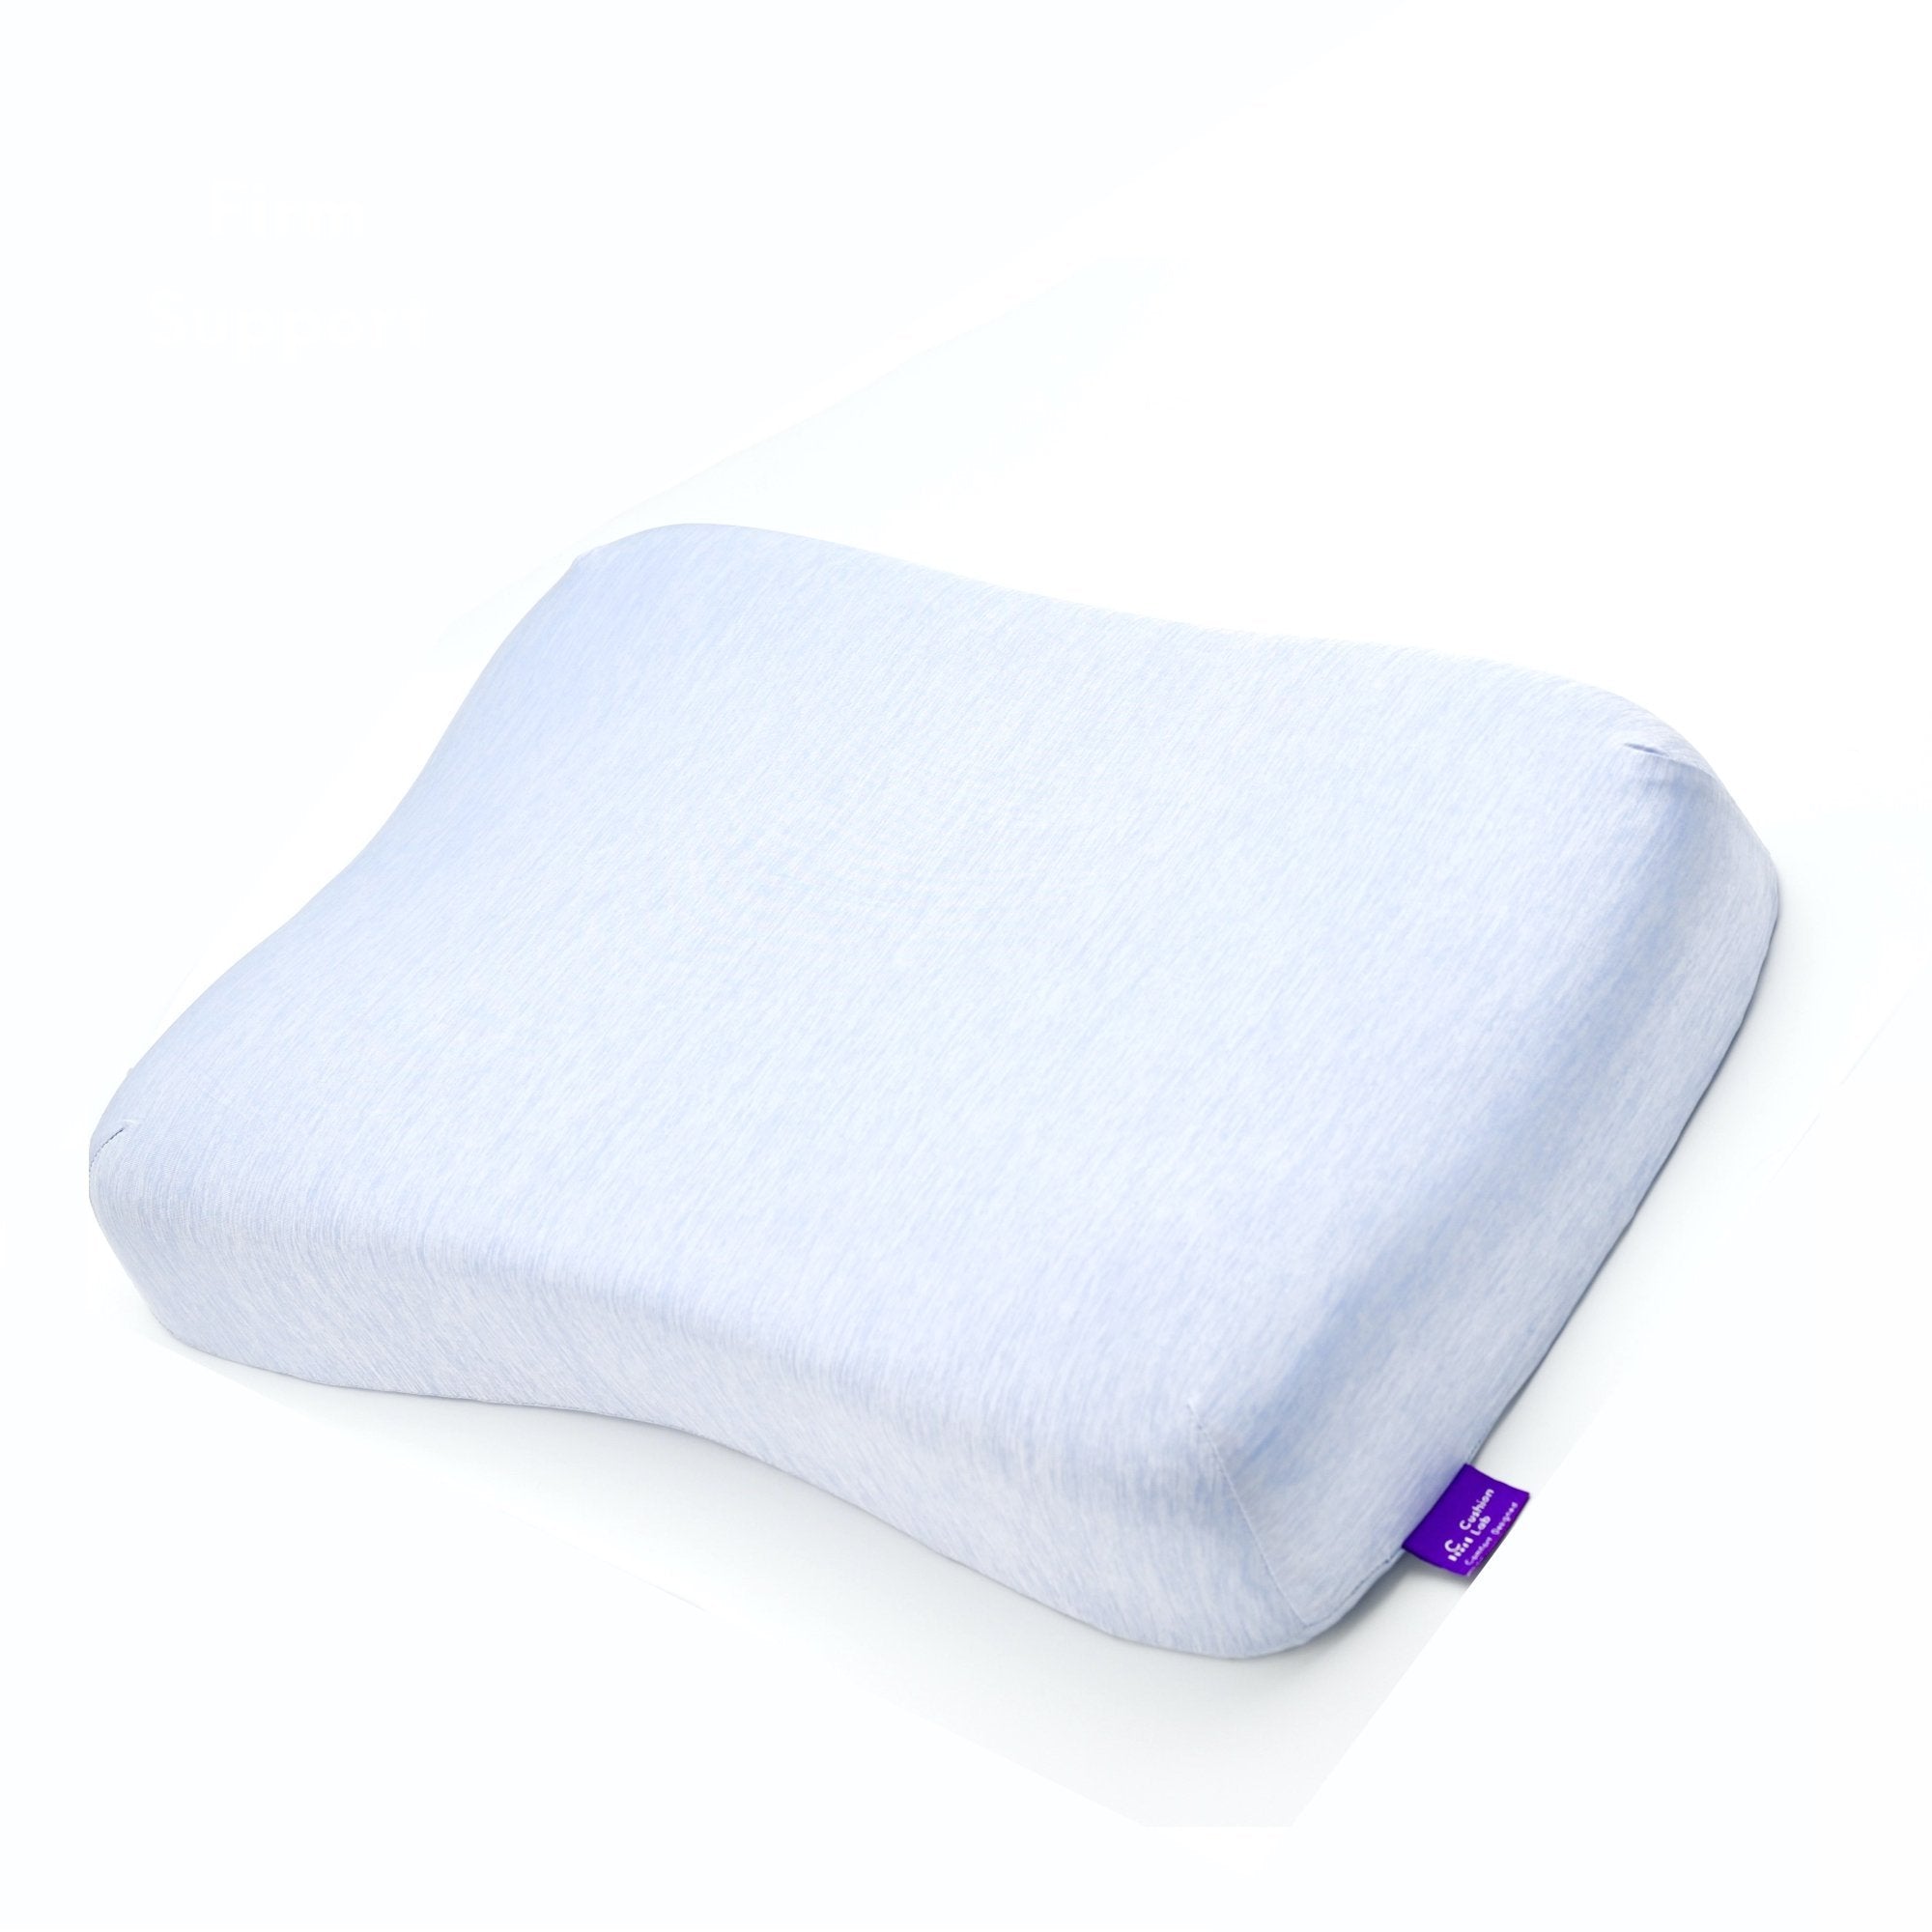 Cooling Ergonomic Contour Pillow - Cushion Lab